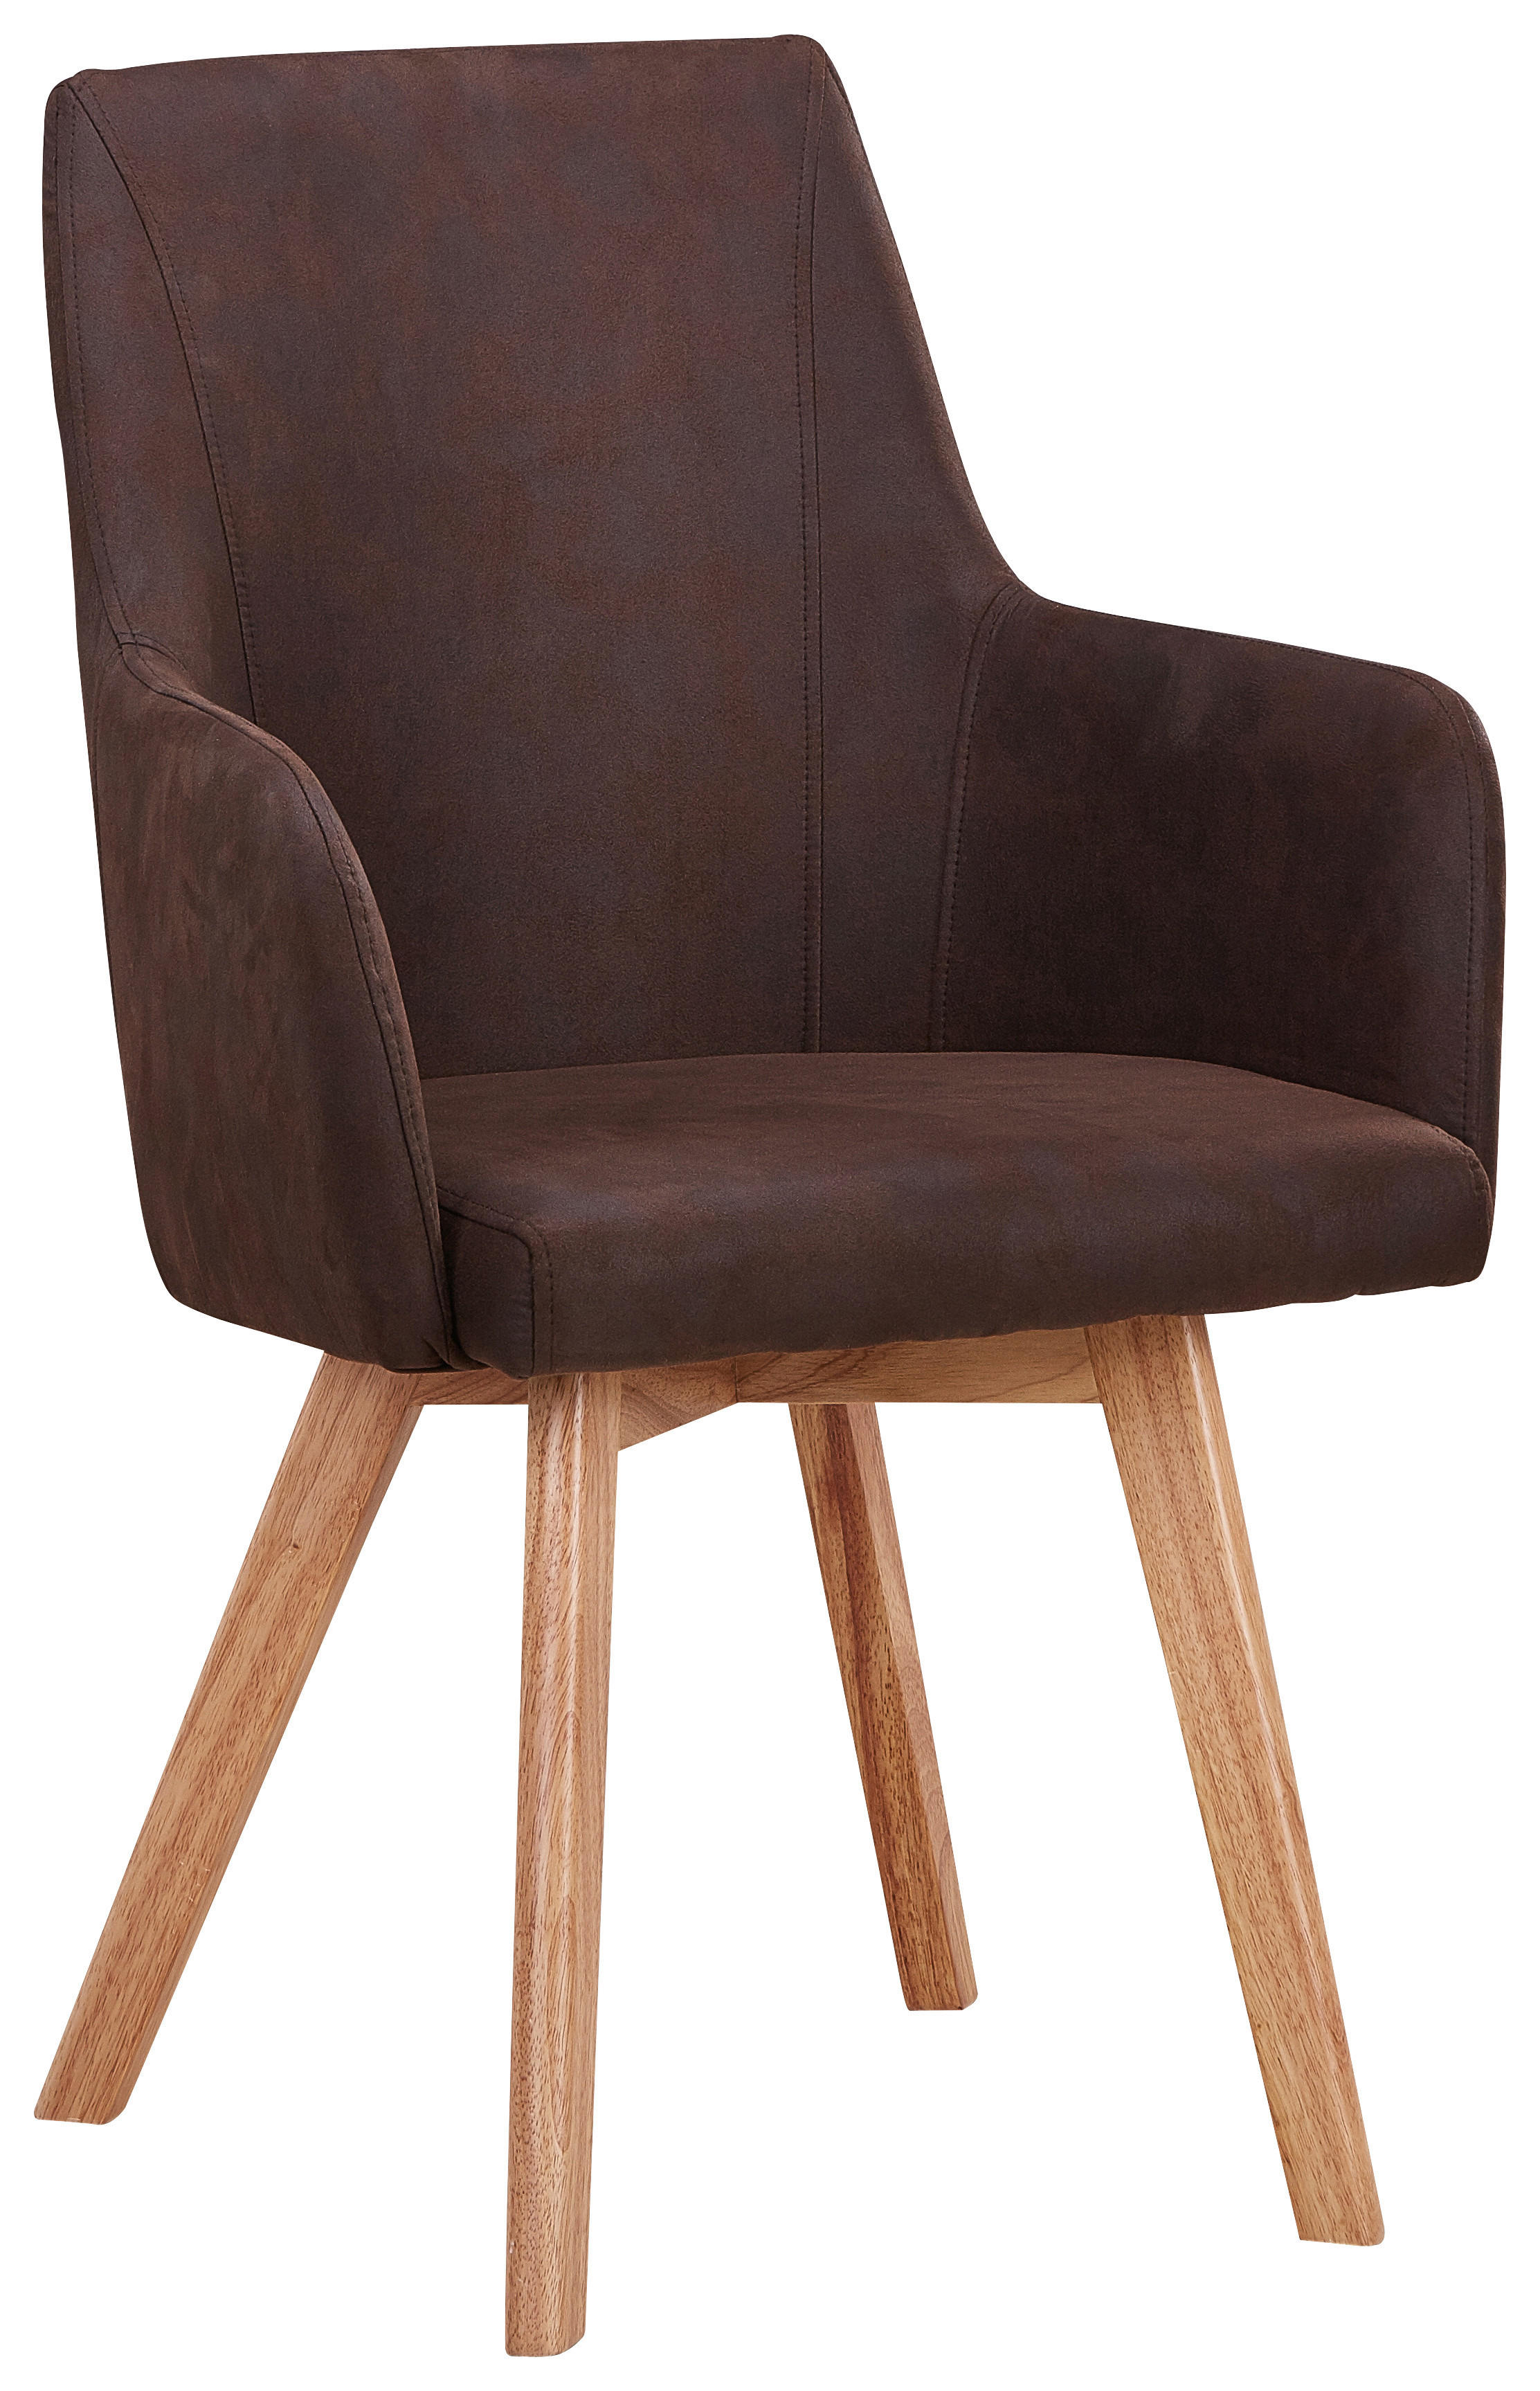 KARMSTOL i trä, textil brun, naturfärgad  - brun/naturfärgad, Design, trä/textil (56/87/57cm) - Carryhome